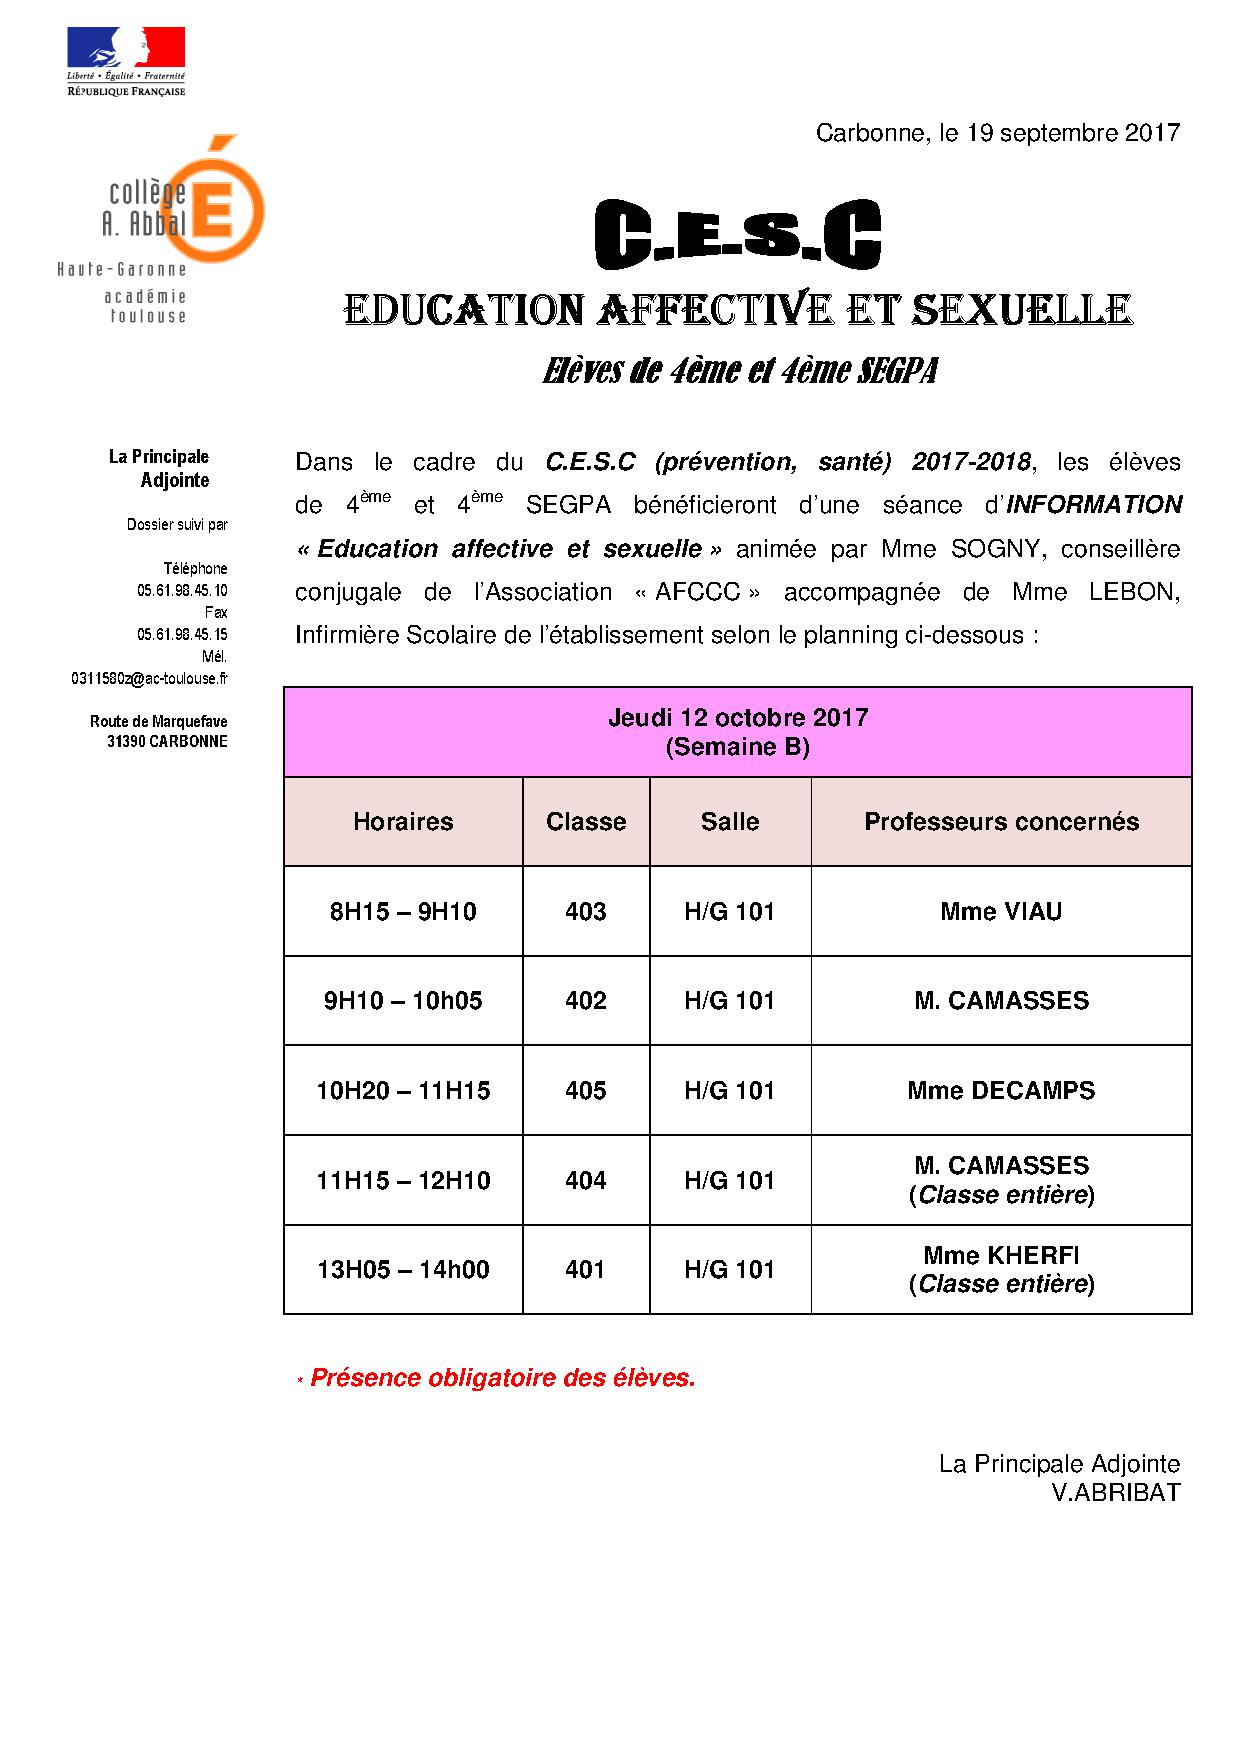 intervention pour une education affective et sexuelle-12 octobre 2017-classes 4ème-ent.jpg